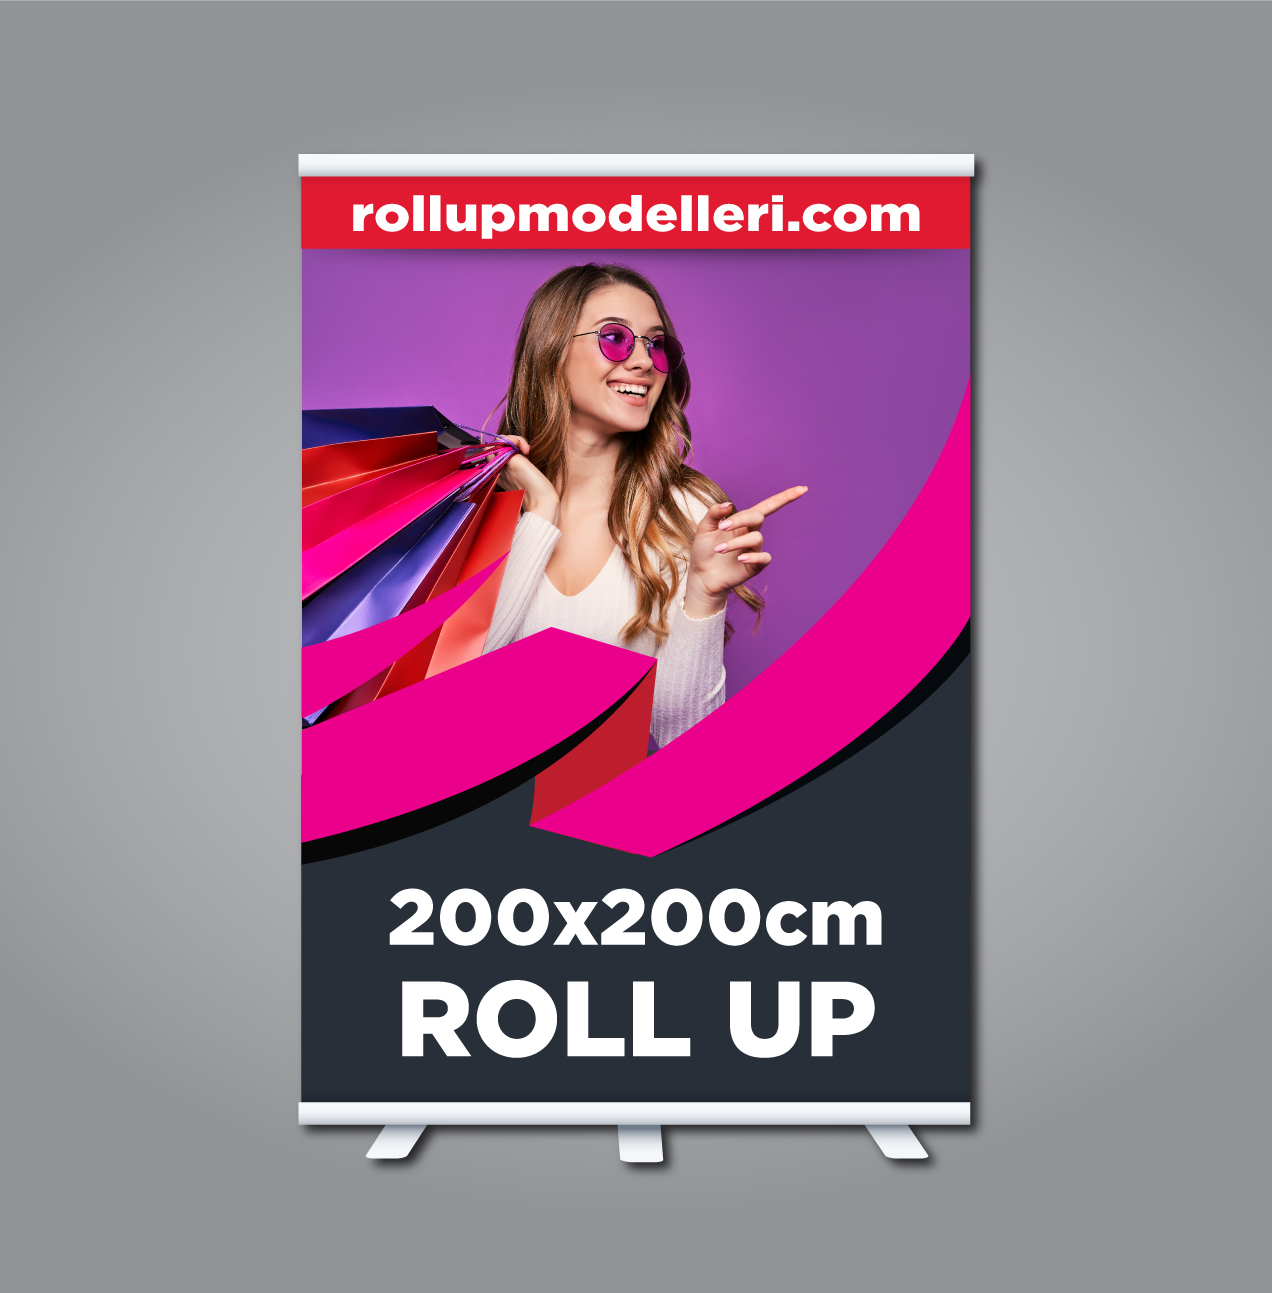 200x200cm Roll Up Modelleri ve 200x200cm Roll Up Fiyatları